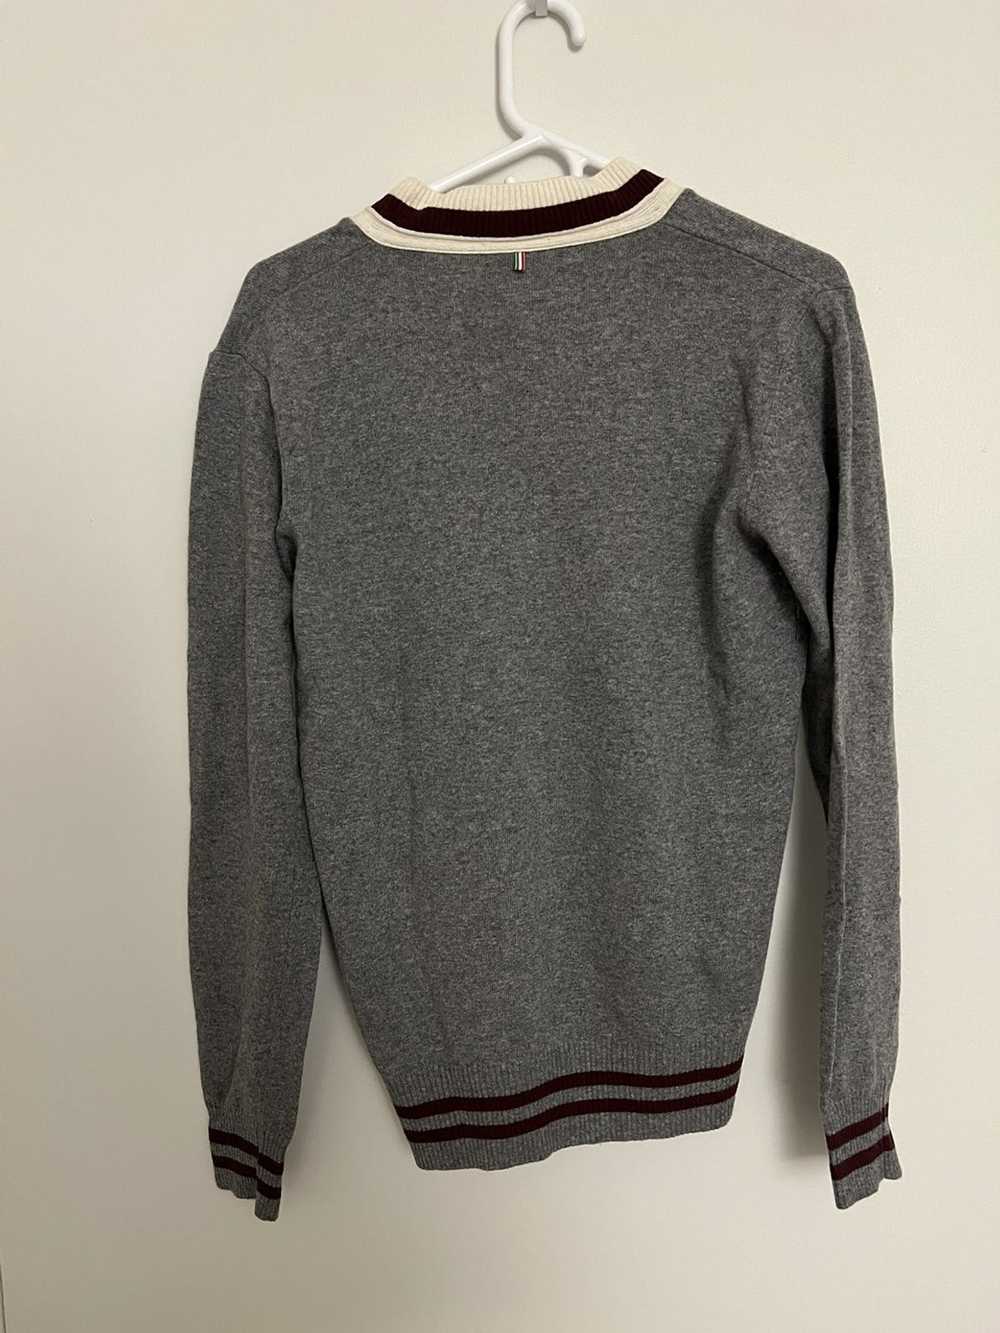 Armani Armani Jeans Grey Sweater - image 2